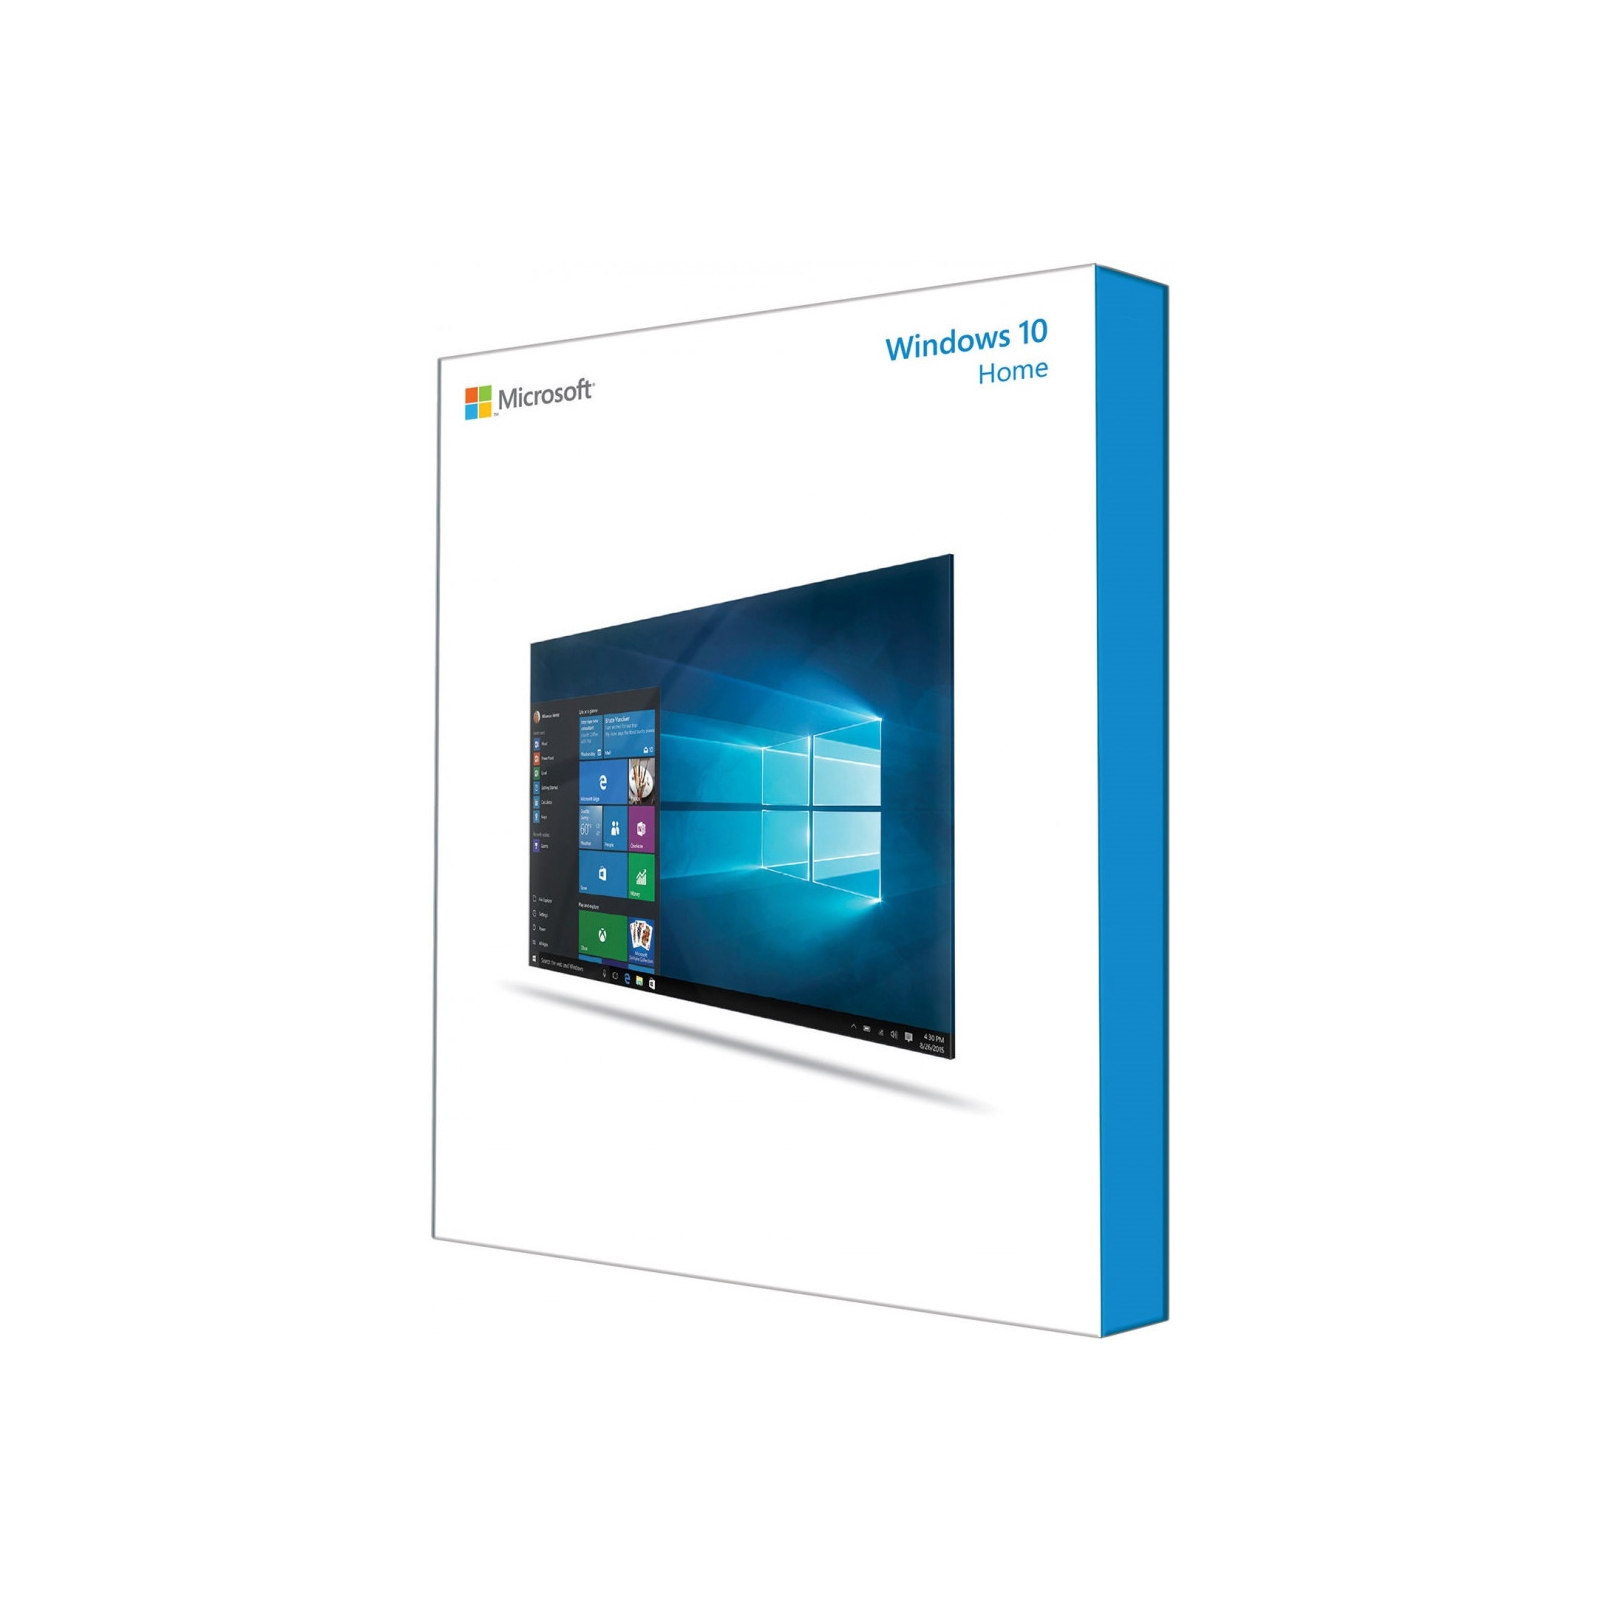 Операційна система Microsoft Windows 10 Home 32-bit/64-bit English USB P2 (HAJ-00054)